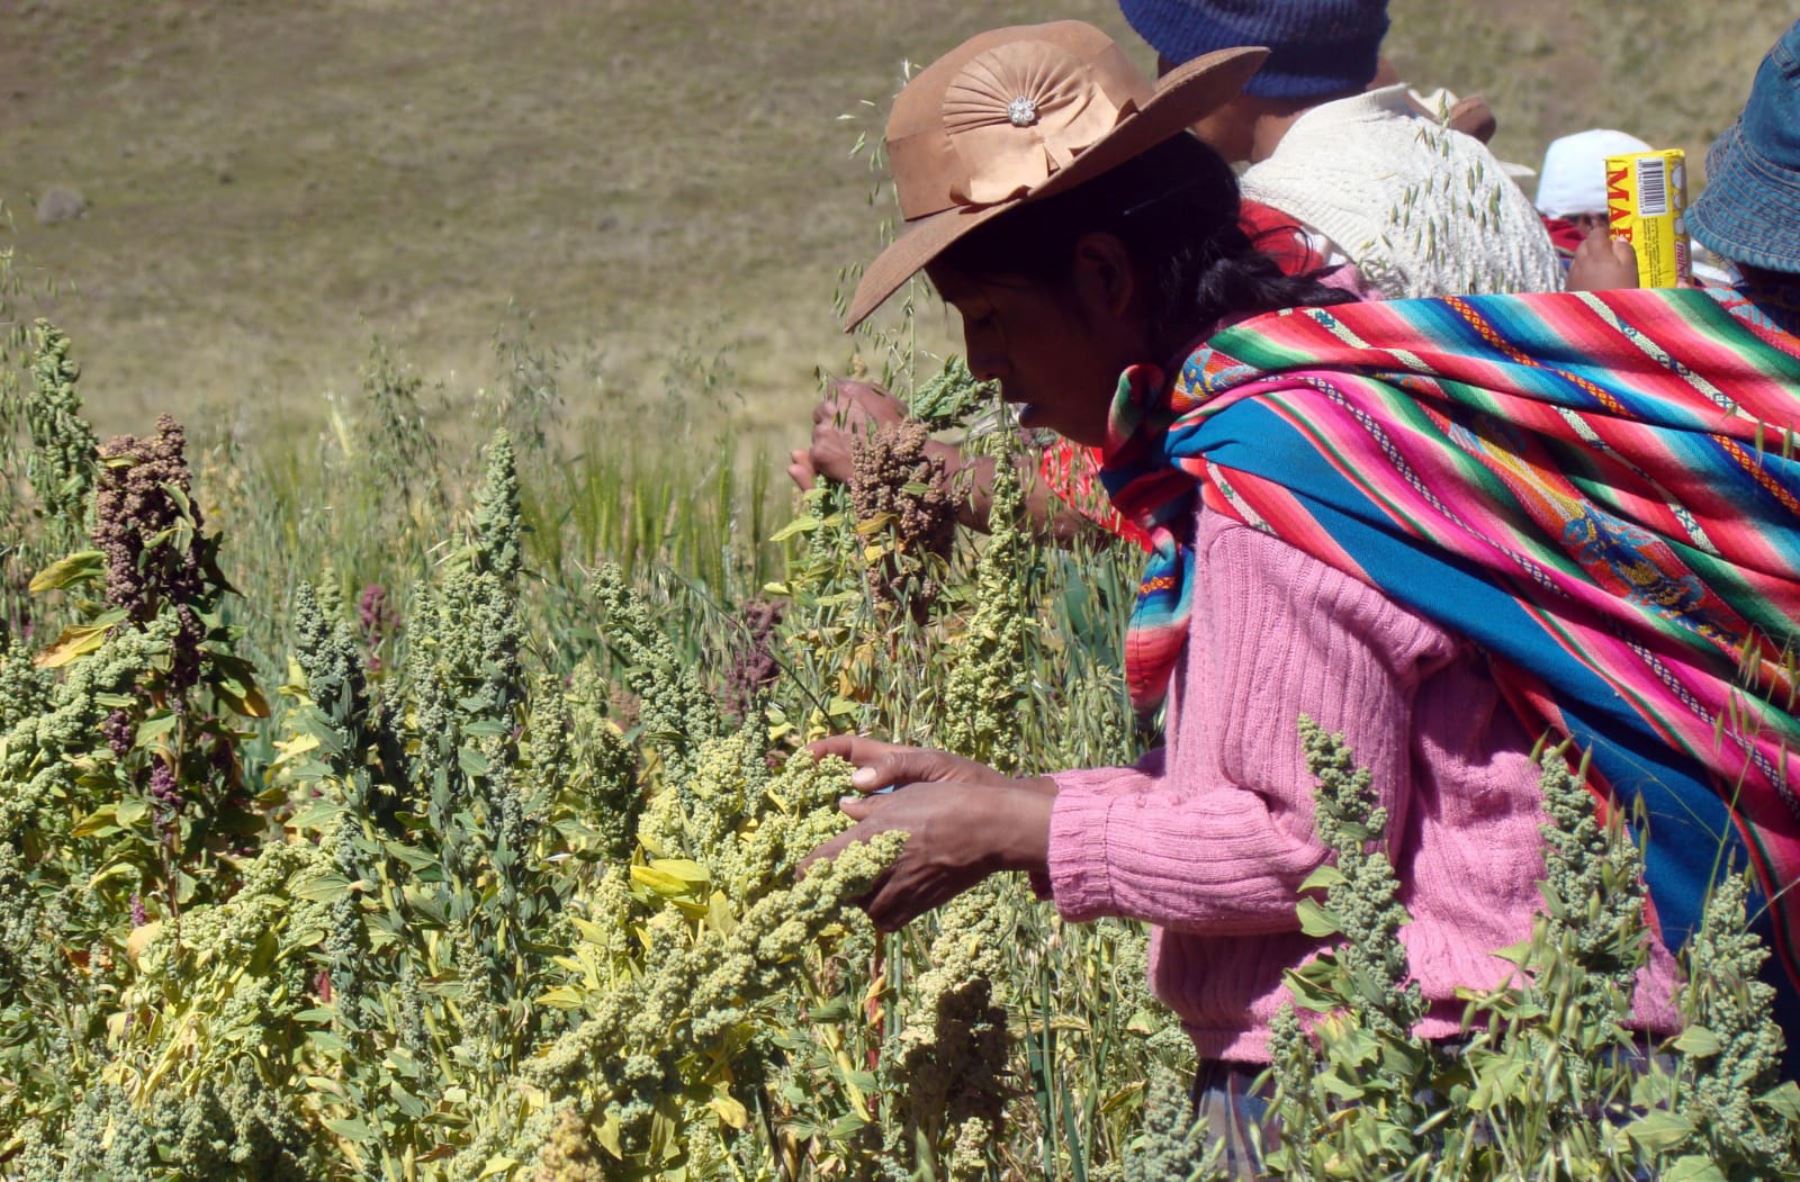 Midagri aprueba estrategia para financiar el emprendimiento de la mujer indígena y rural. Foto: Andina